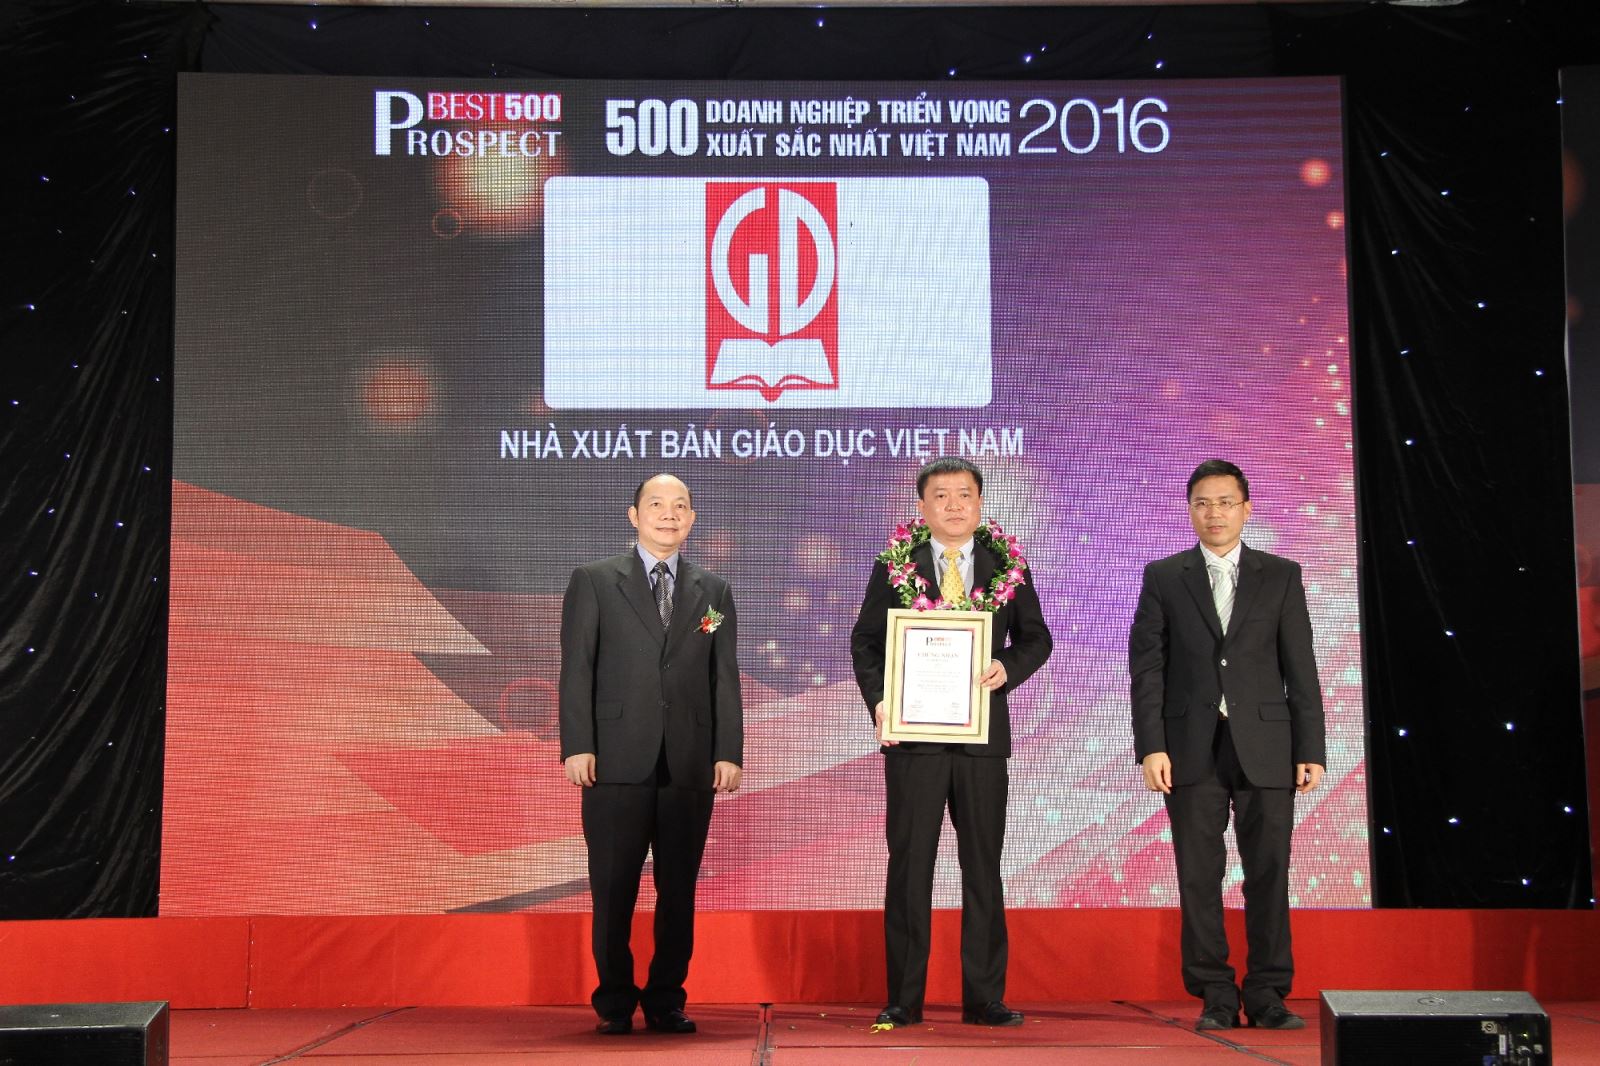 Nhà xuất bản Giáo dục Việt Nam đứng thứ 4 trong Bảng xếp hạng 500 doanh nghiệp triển vọng xuất sắc nhất Việt Nam năm 2016